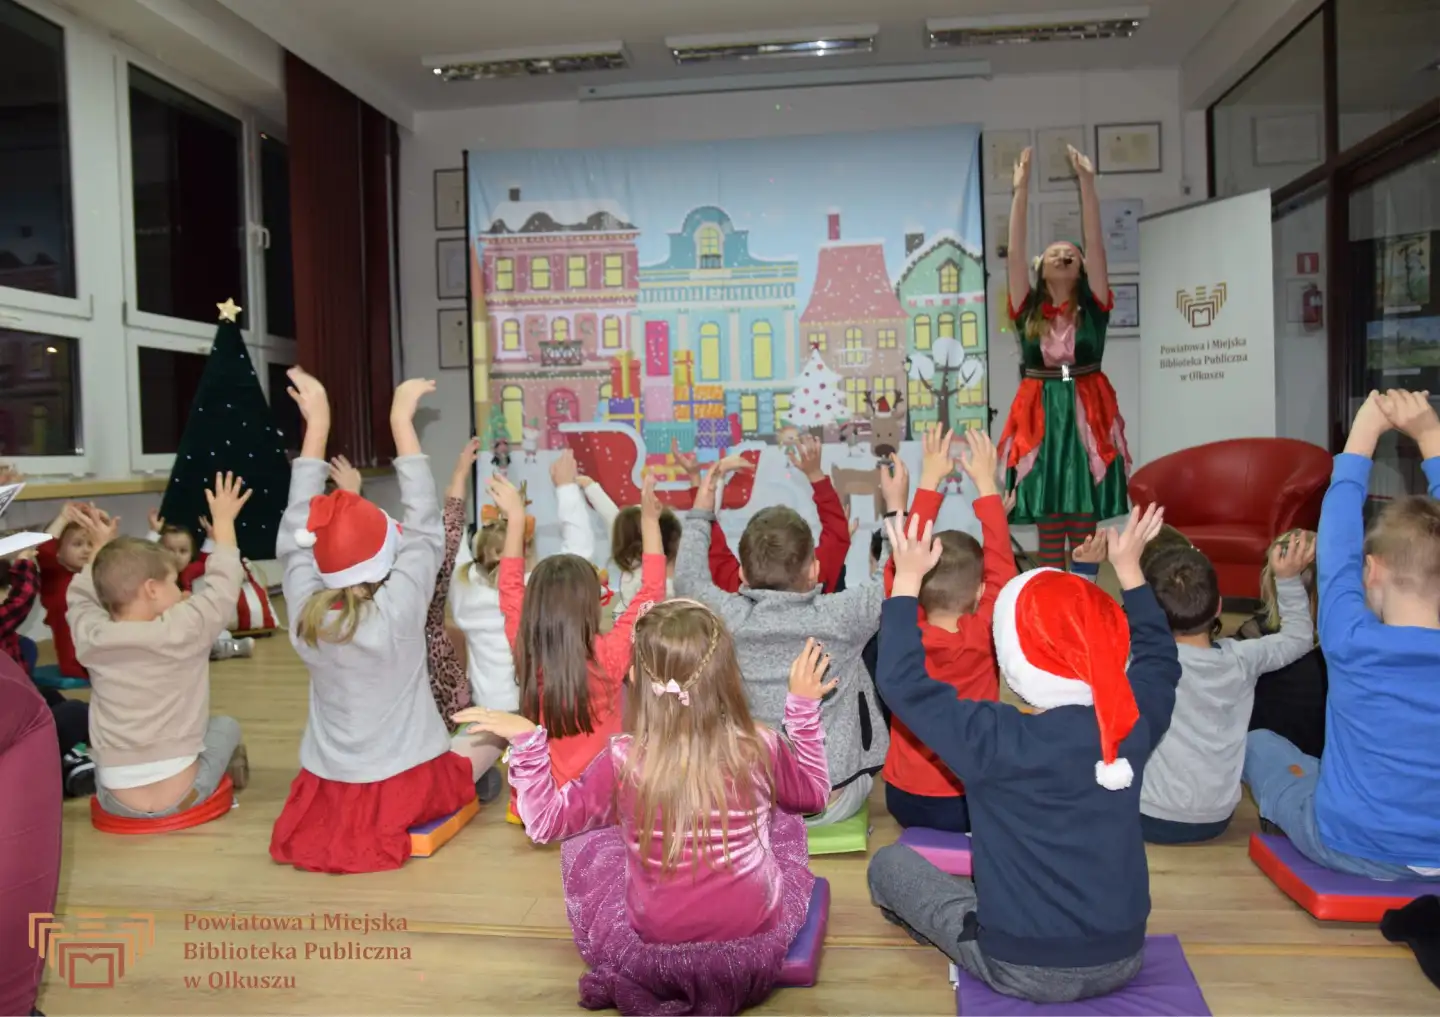 Zdjęcie zostało zrobione w Czytelni olkuskiej Biblioteki. Na tle płótna z zimowy, świątecznym miastem stoi kobieta w stroju elfa z uniesionymi do góry rękoma. Na podłodze siedzą dzieci i również podnoszą ręce do góry. Niektóre z nich mają na głowach czapki Mikołajowe.